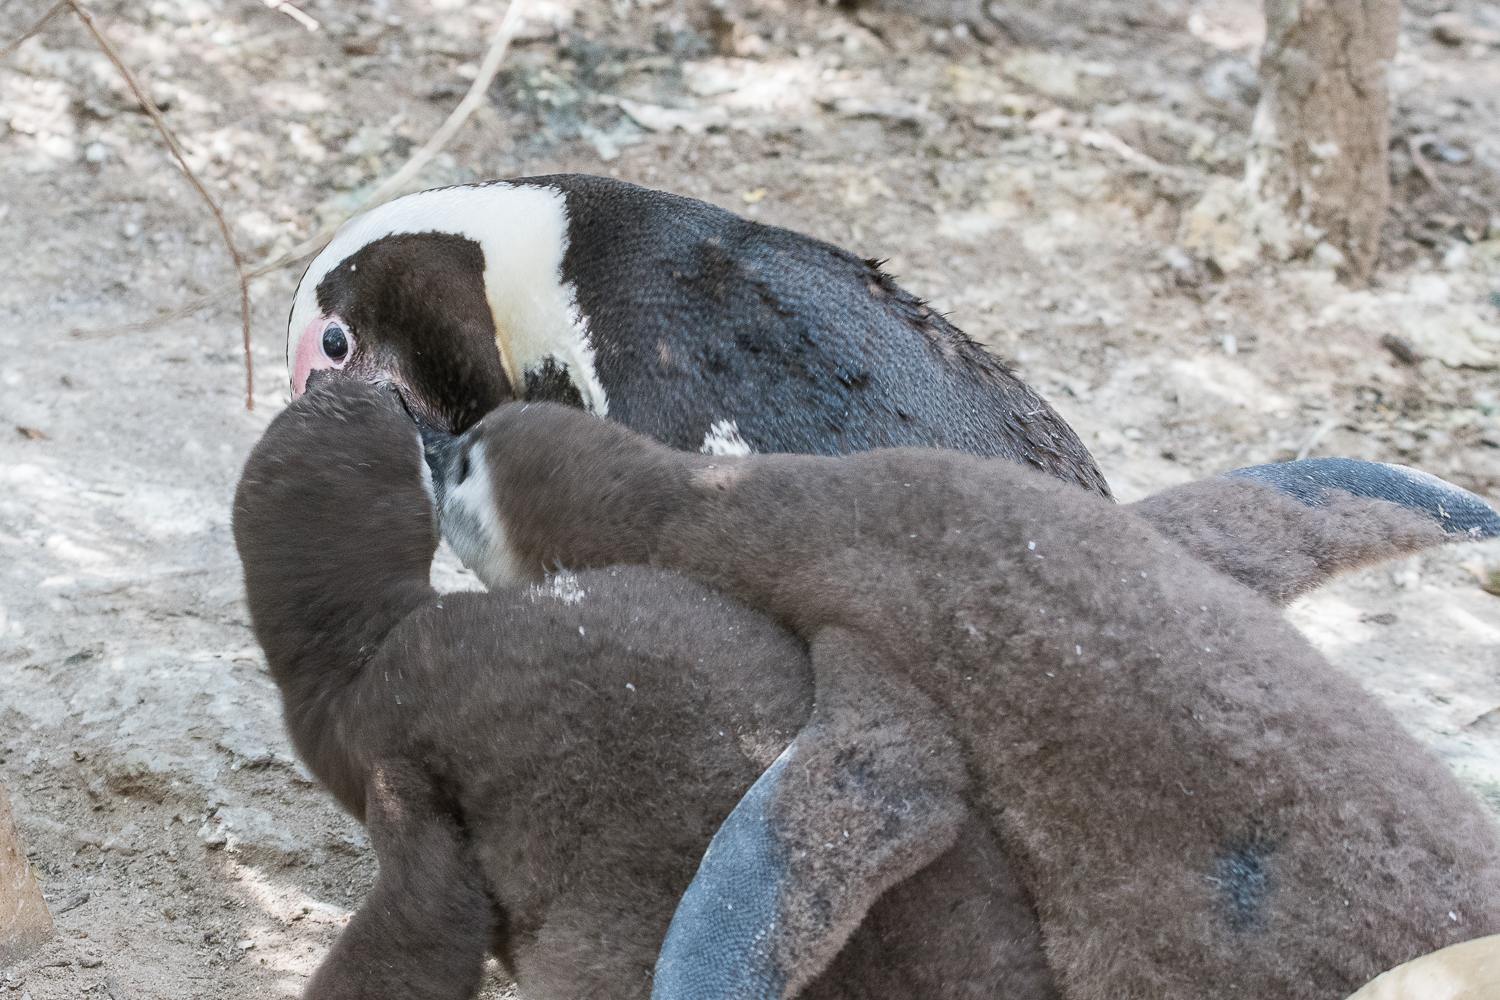 Manchots du Cap (African Penguin, Sphenicus Demersus), Boulders’ beach : Interférence du second juvénile avec le nourrissage du premier.